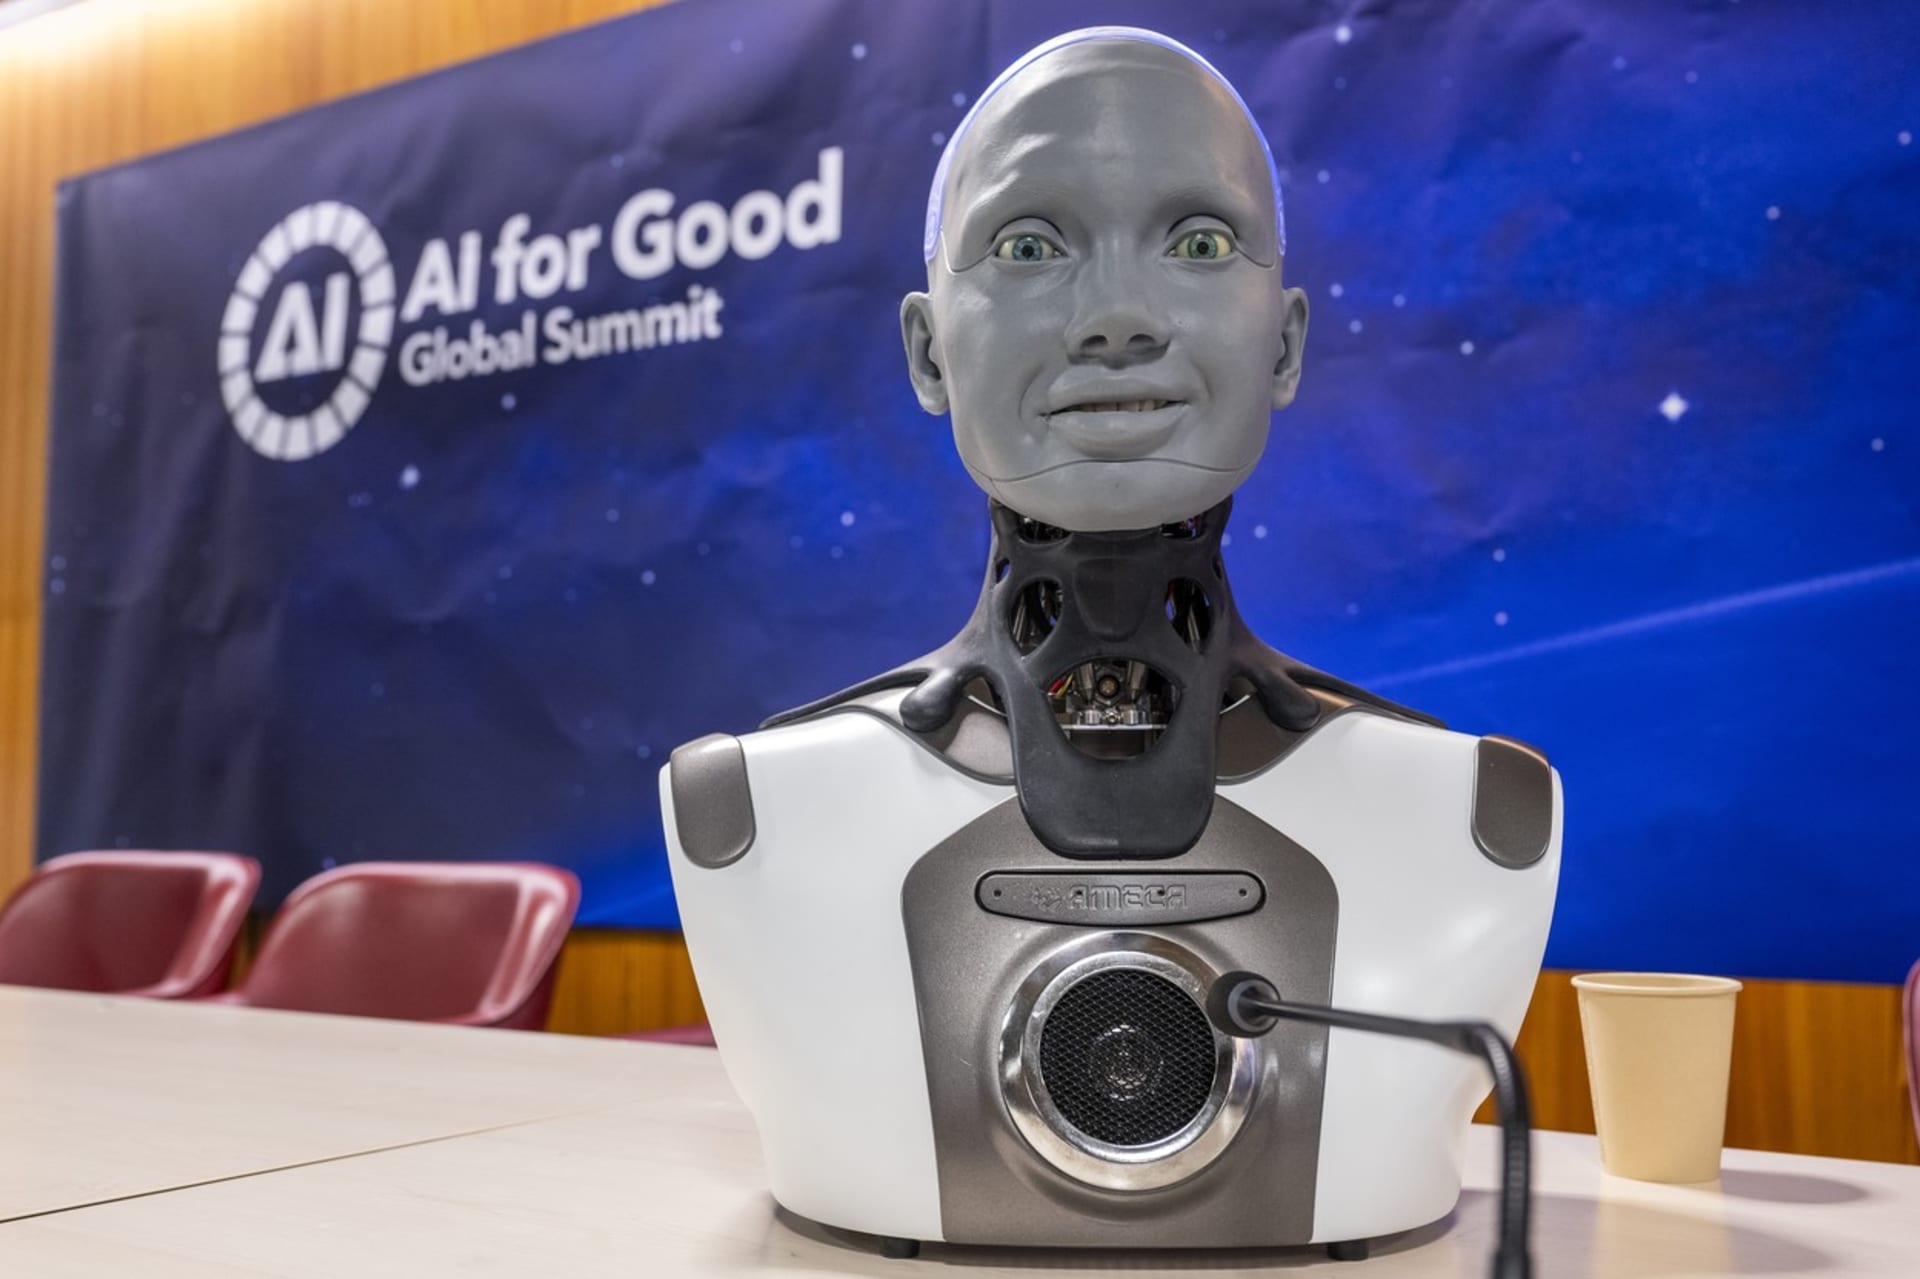 V Ženevě se uskutečnila debata mezi novináři a roboty, kteří využívají umělou inteligenci. 